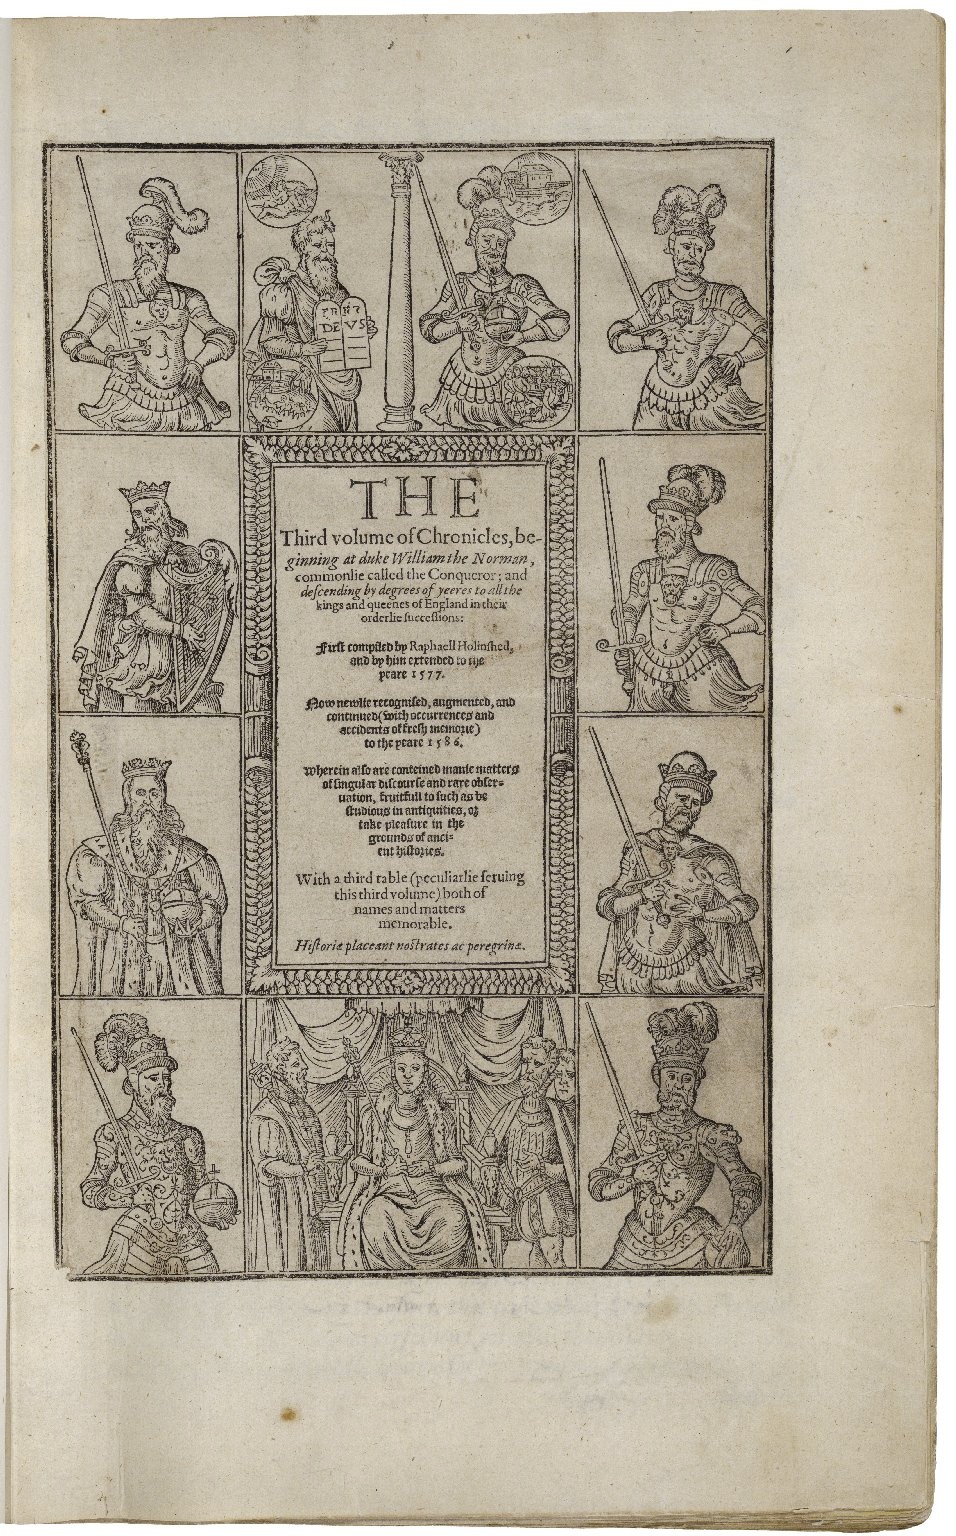 Хроники Холиншеда, 1587, Титульный лист второго издания